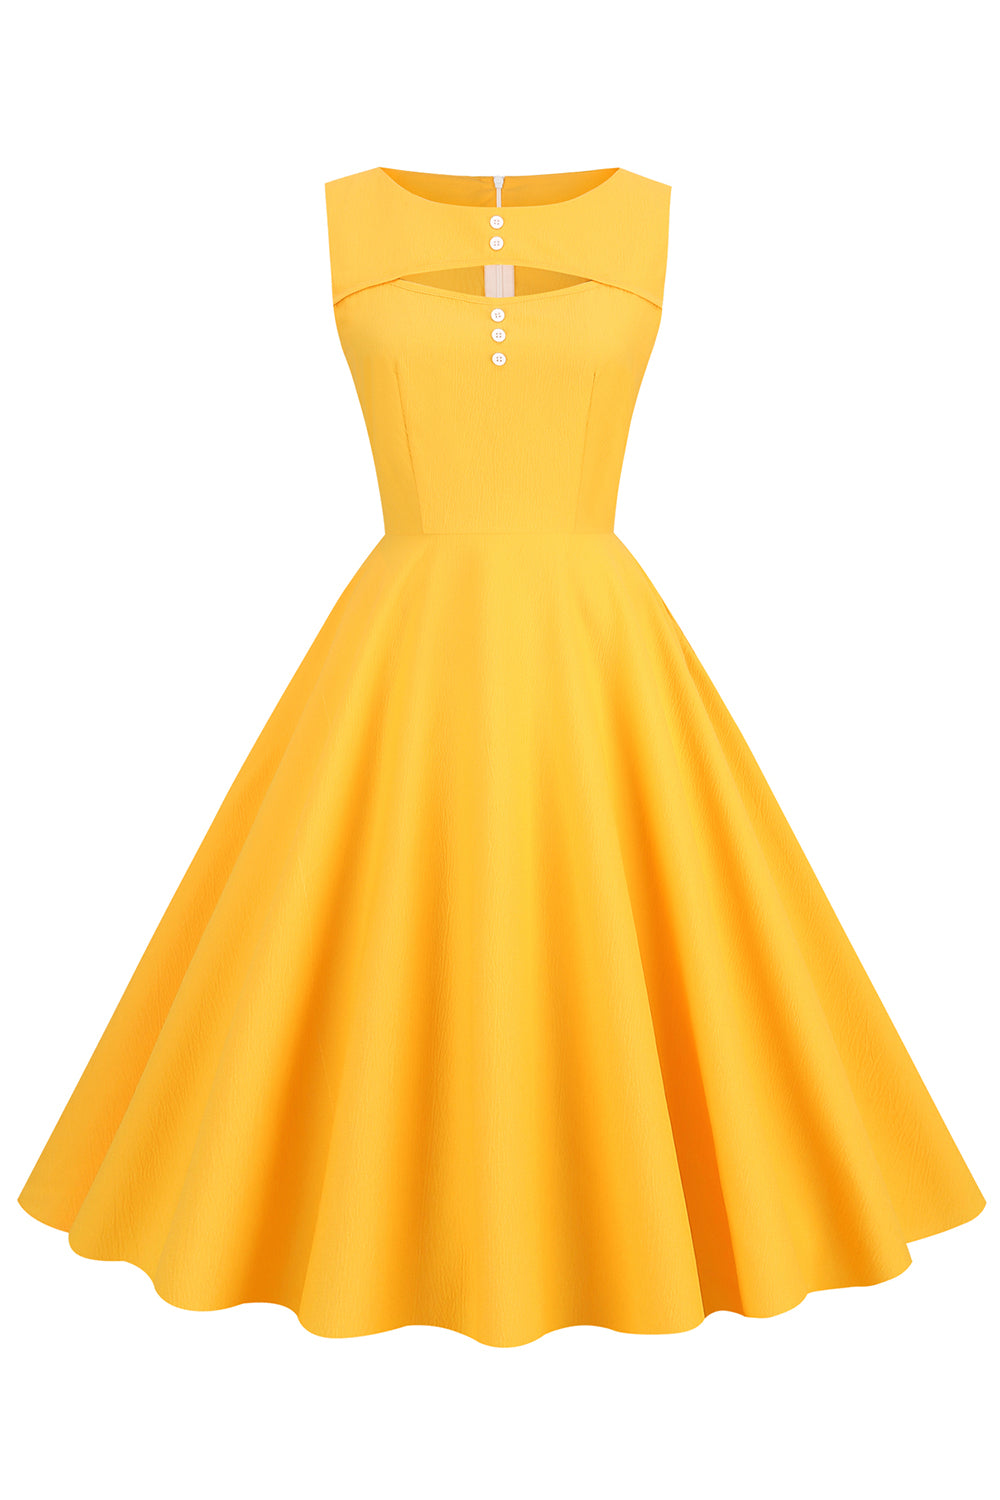 Robe de style rétro jaune des années 50 avec trou de serrure